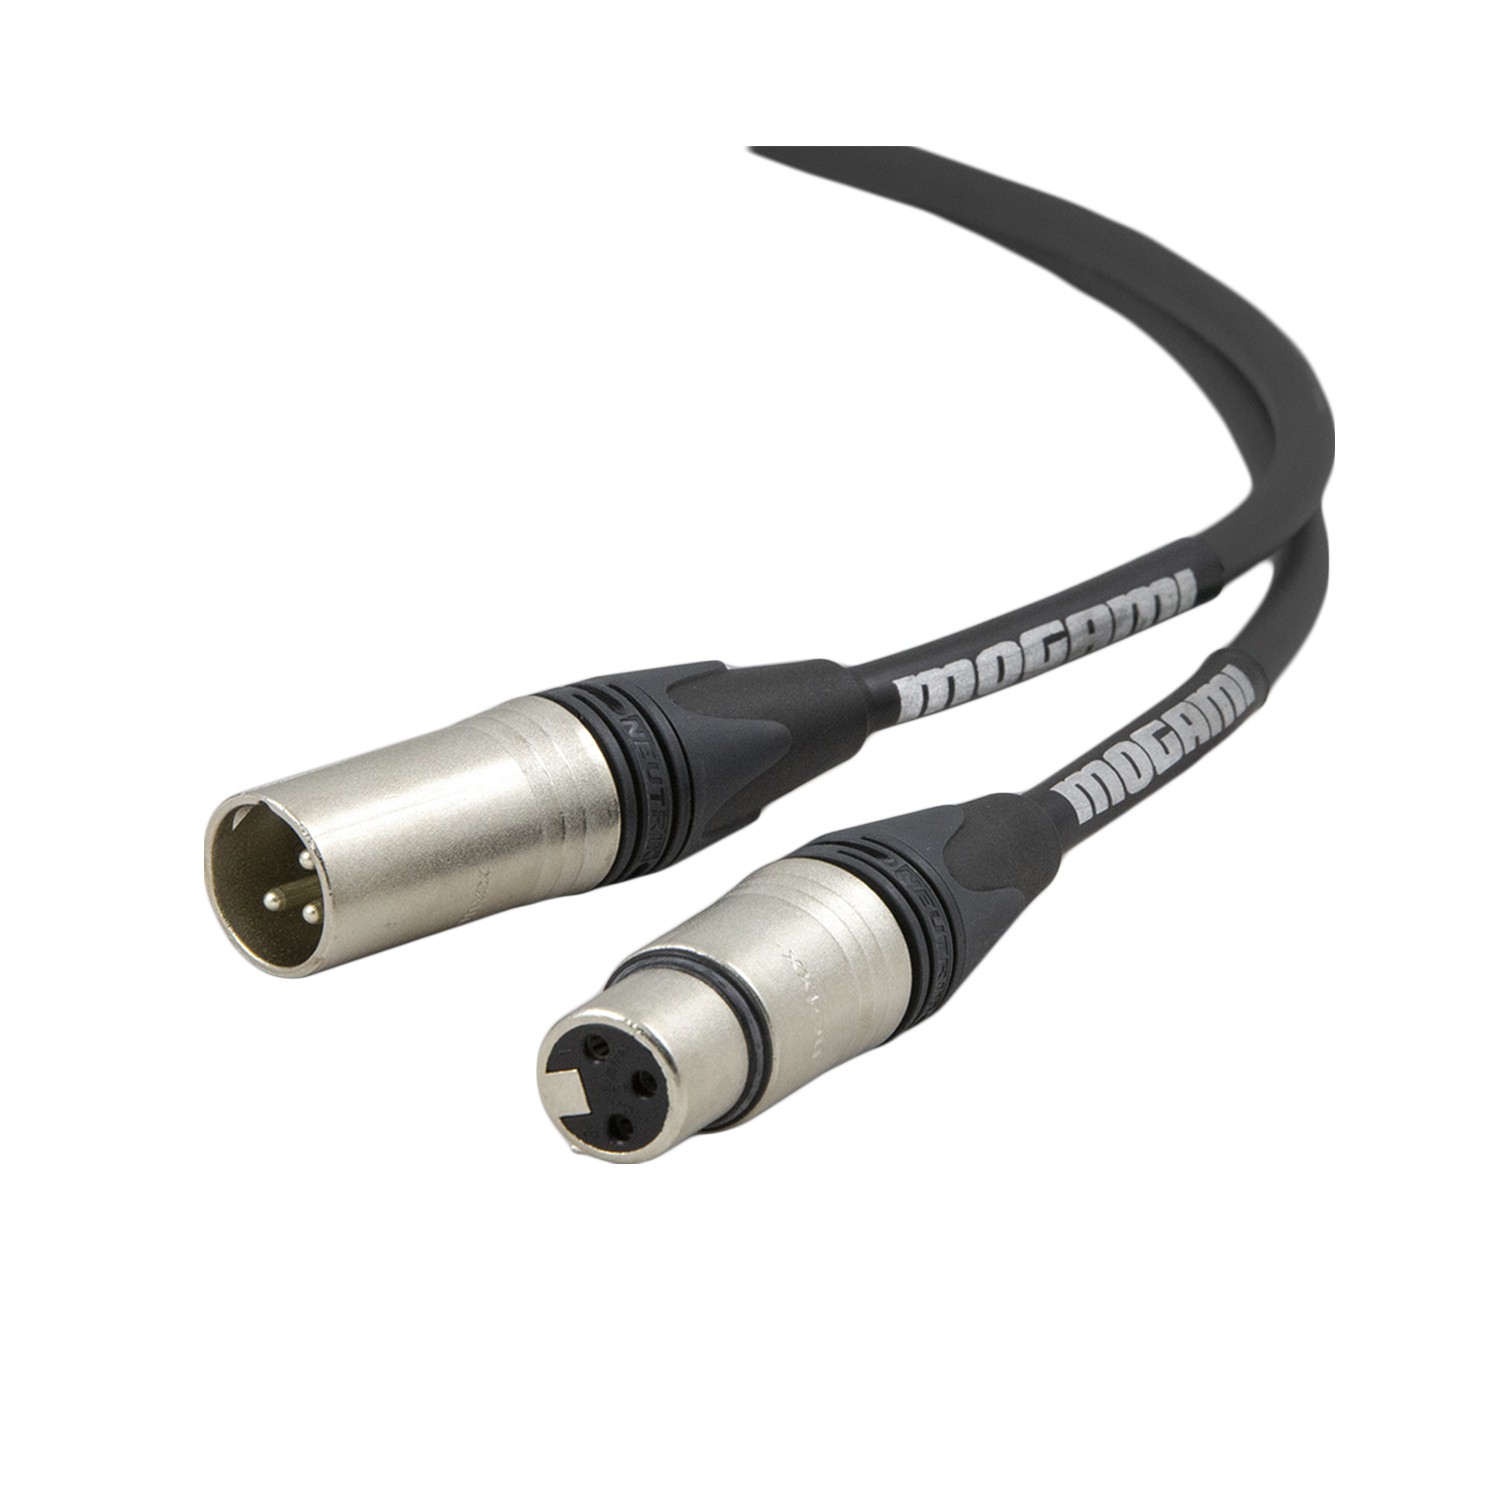 สายสัญญาณ MOGAMI 2534 XM-XF 10M Microphone Cable